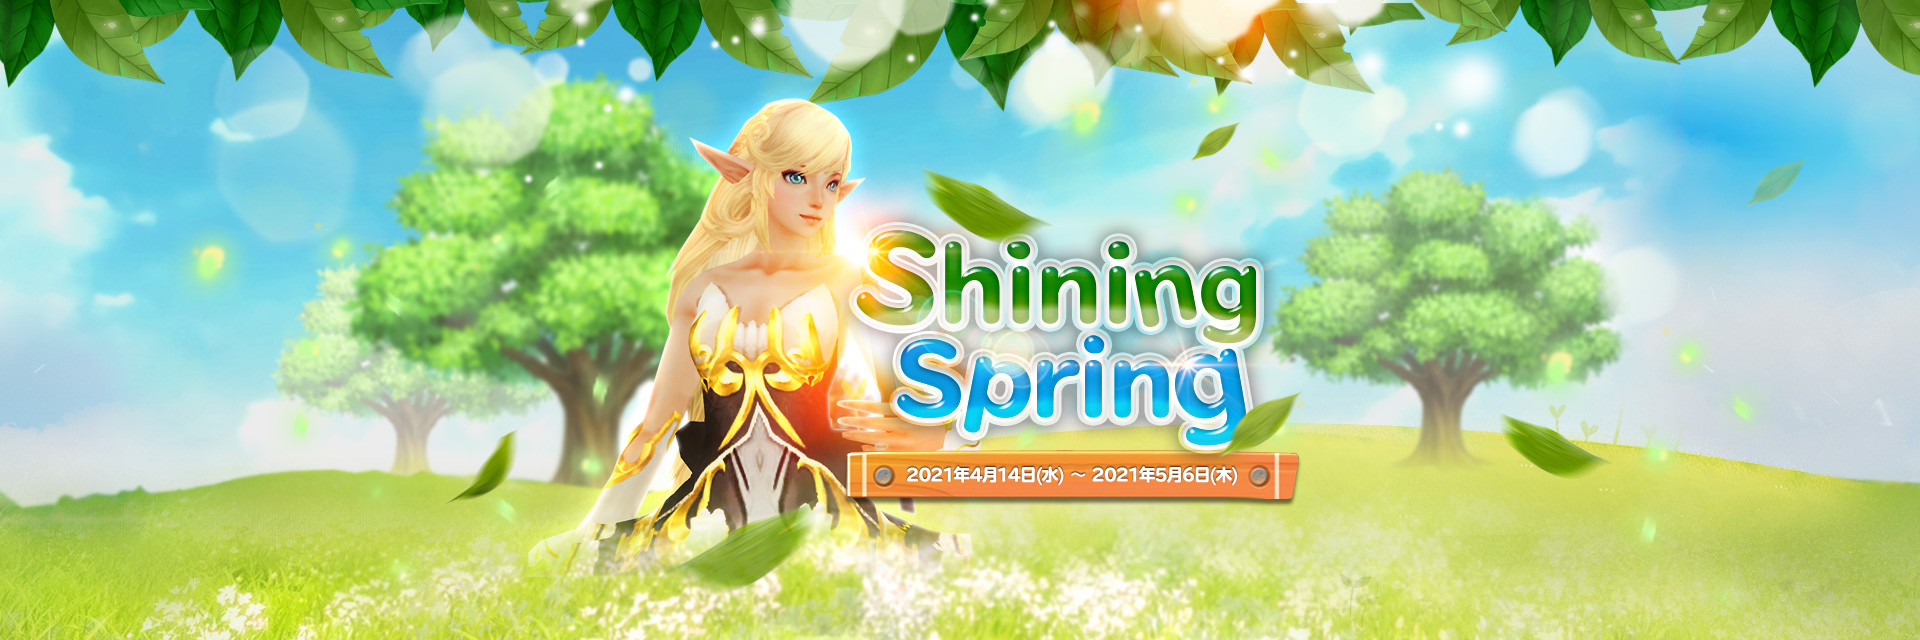 Shining Spring